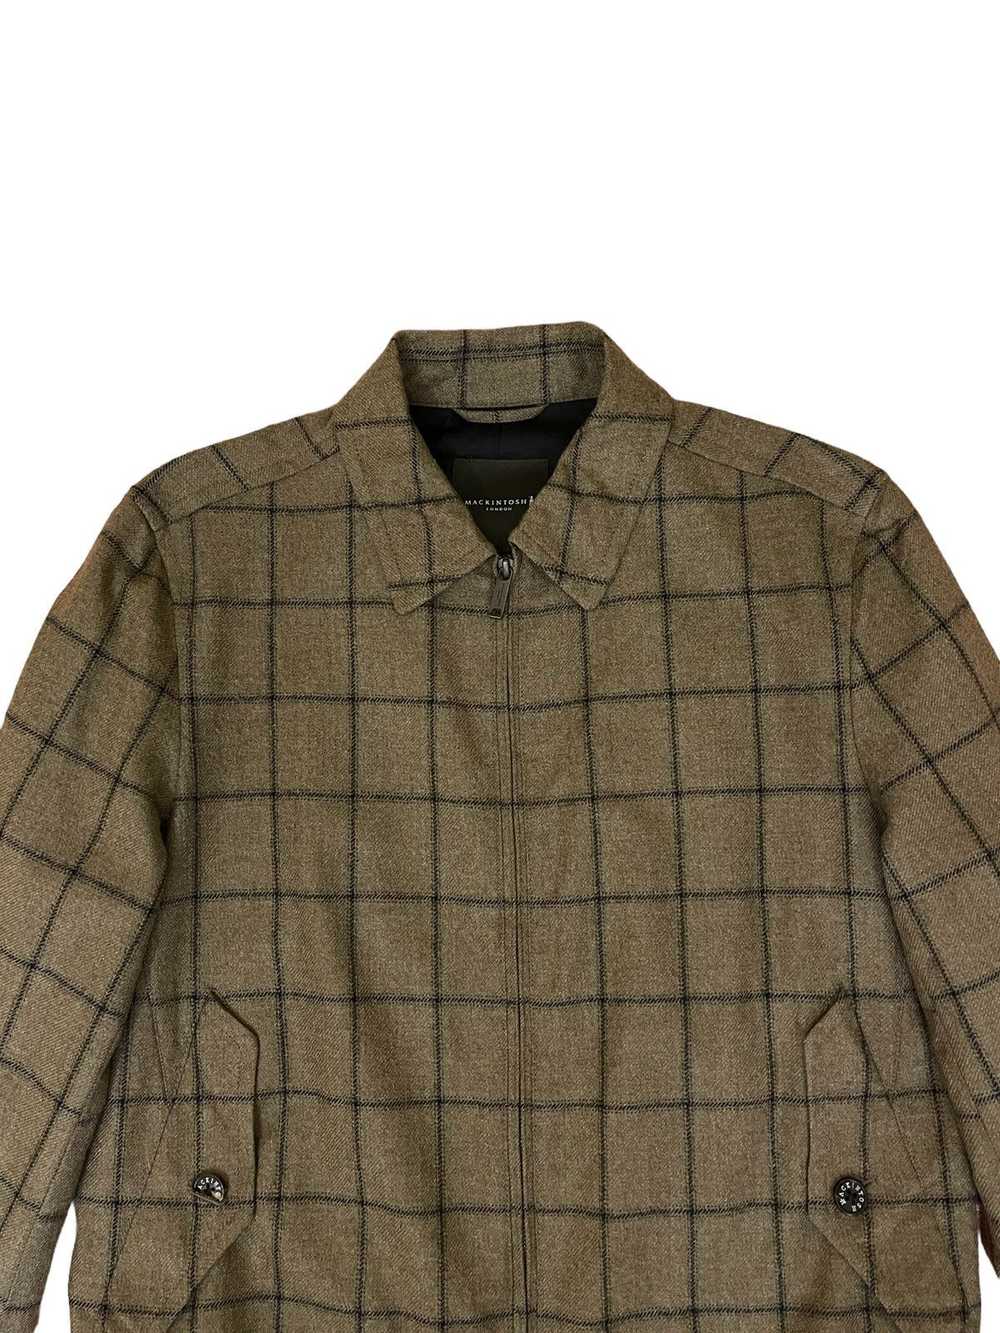 Mackintosh Mackintosh London jacket - image 6